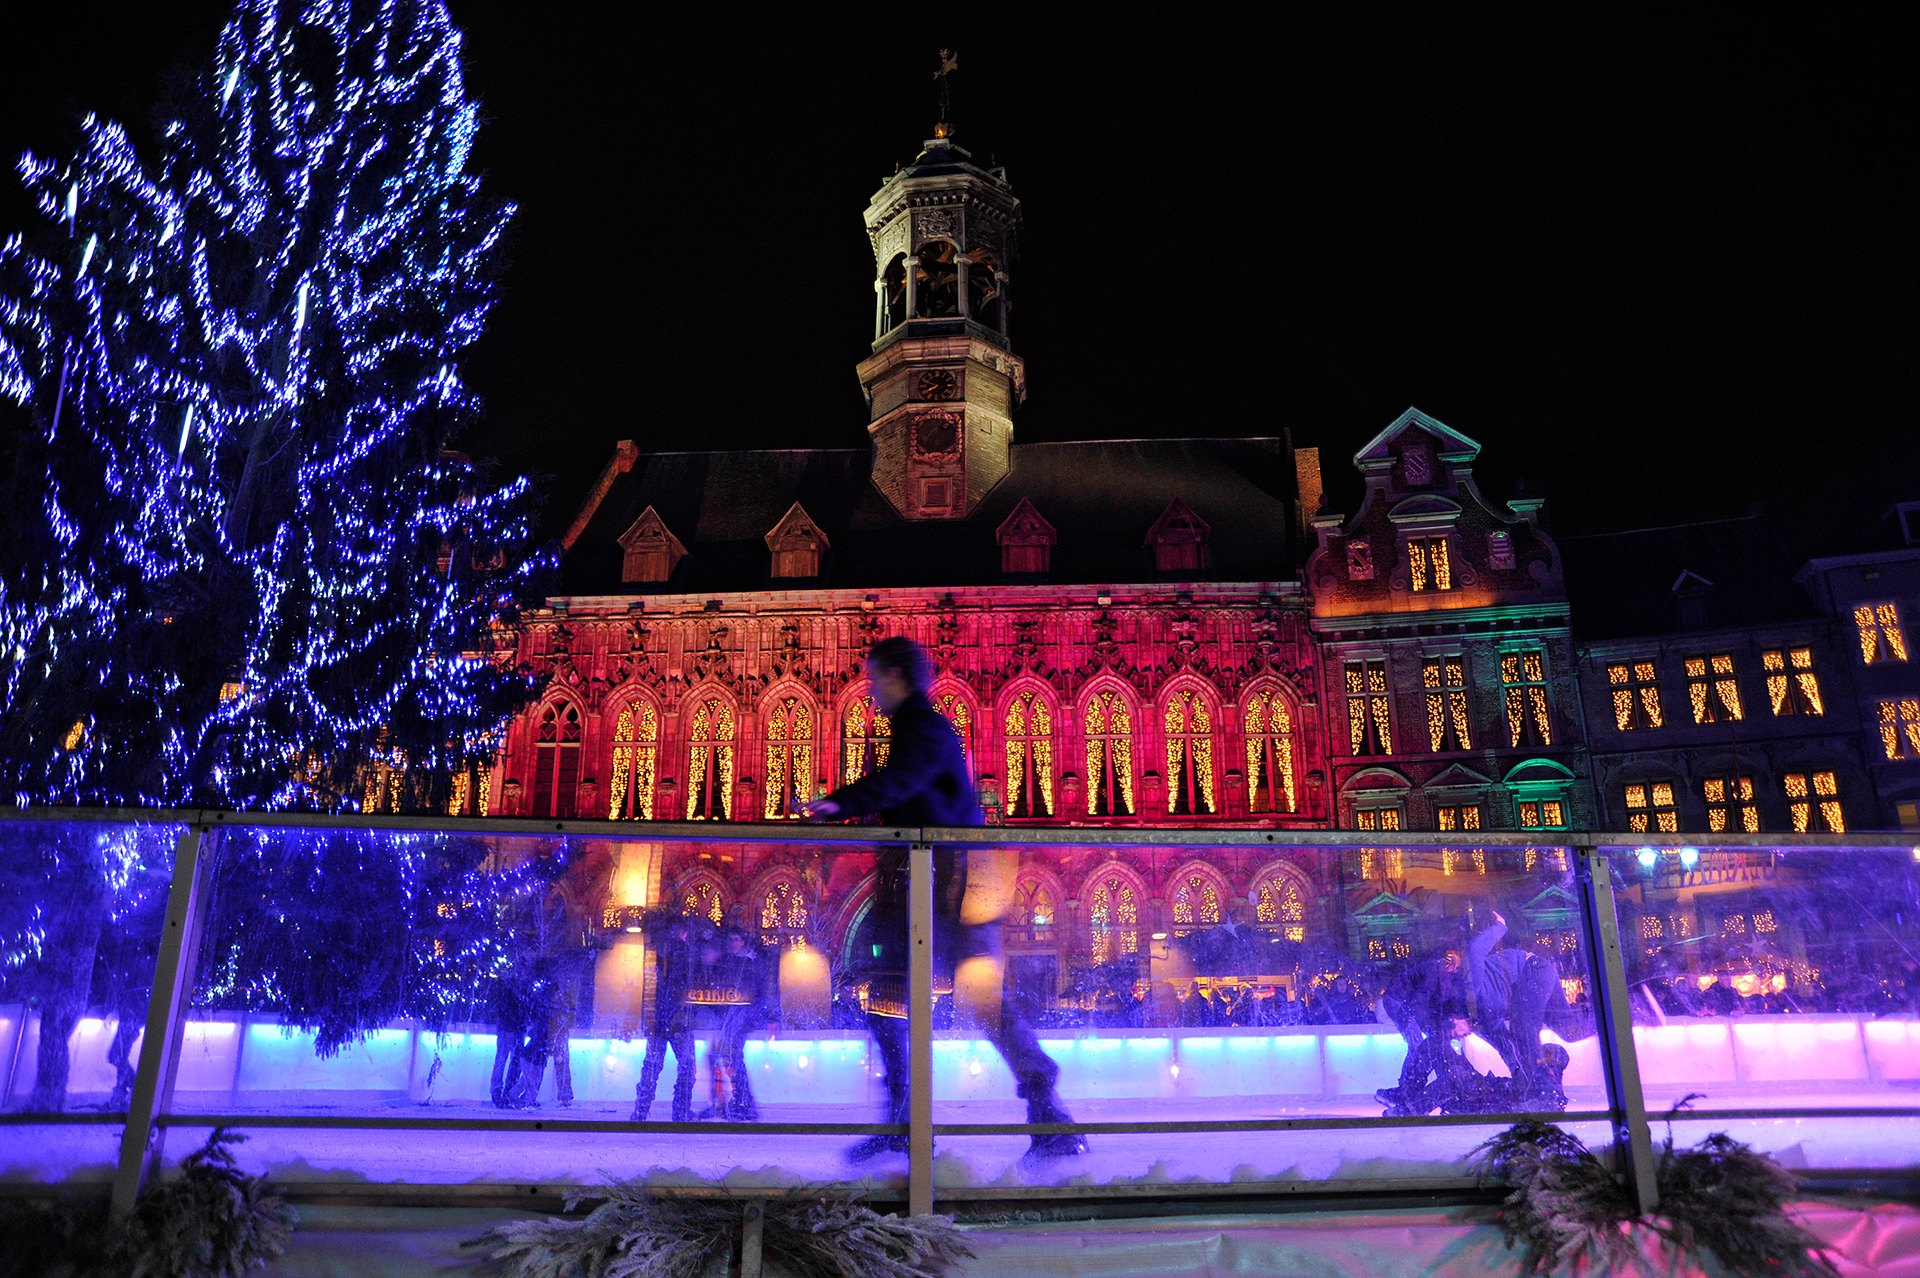 Patinoire illuminée au pied de l'hôtel de ville de Mons